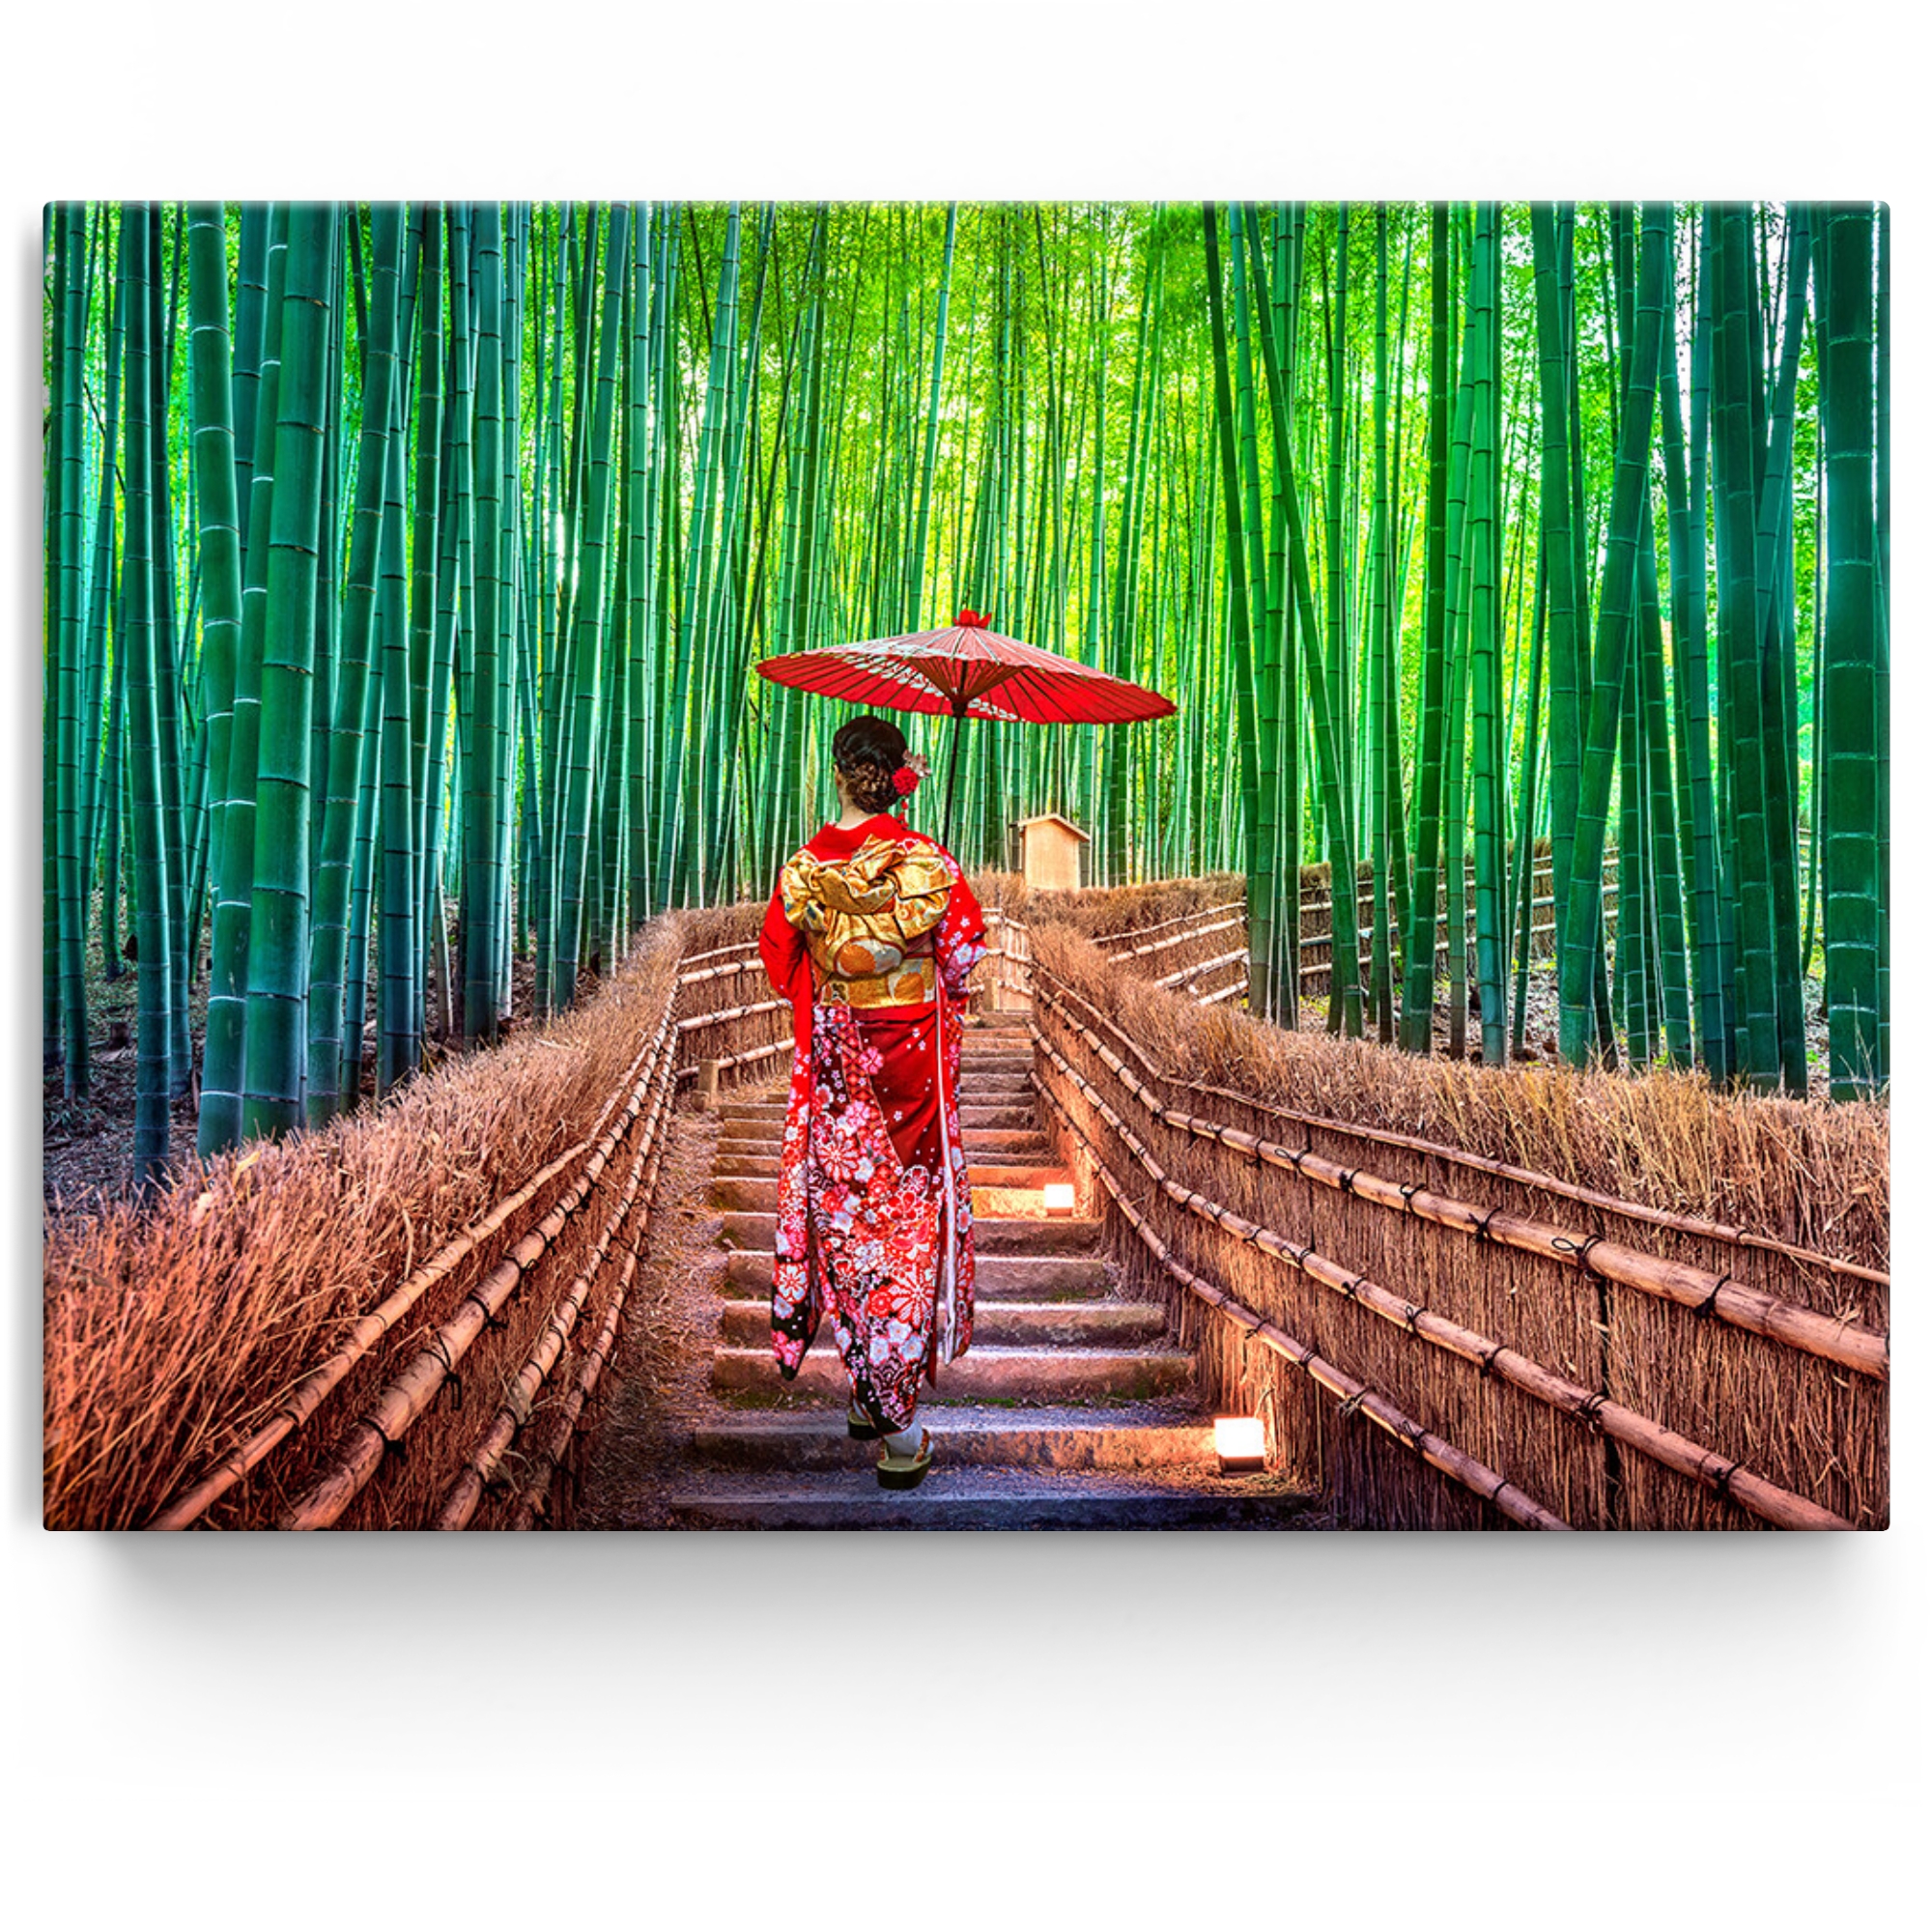 Personalisiertes Leinwandbild Bambuswald